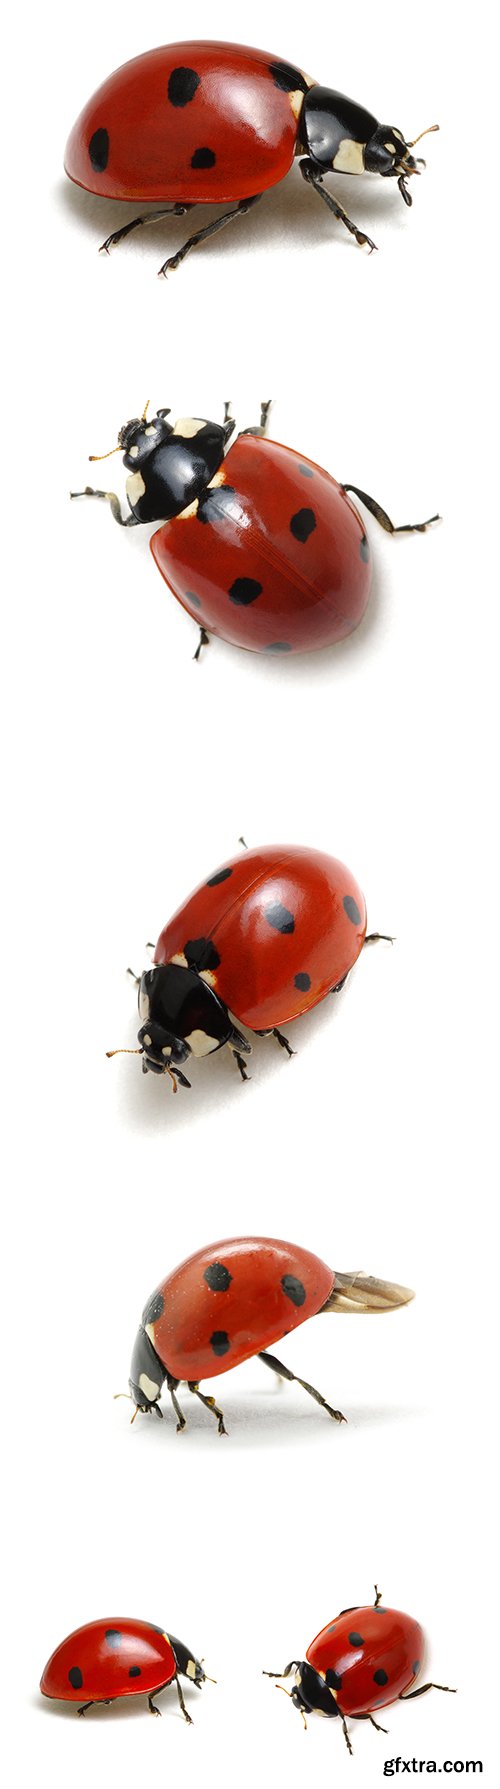 Ladybugs Isolated - 13xJPGs